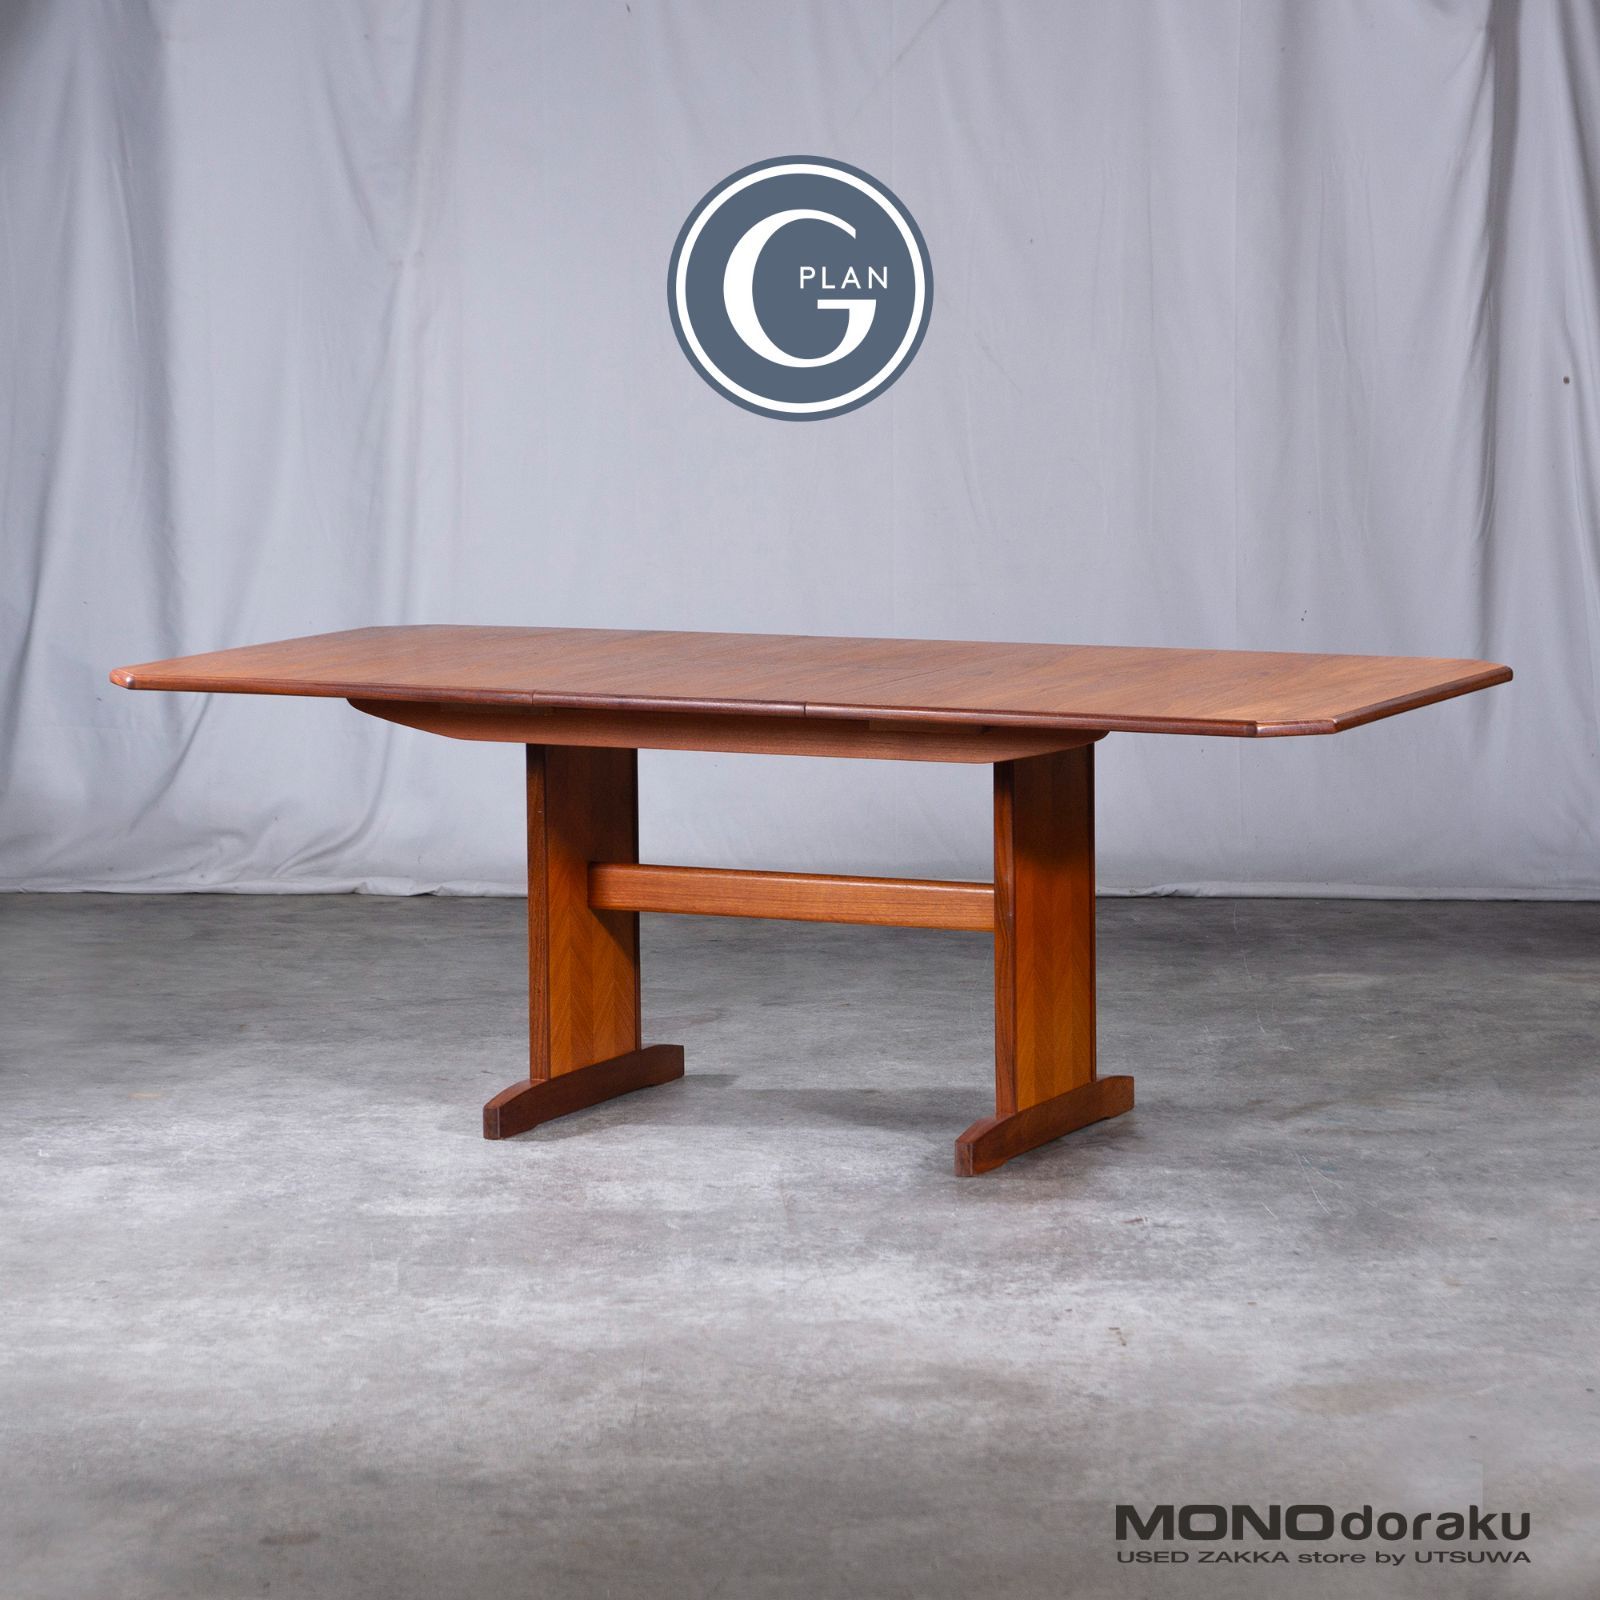 ジープラン ダイニングテーブル G-PLAN エクステンションテーブル